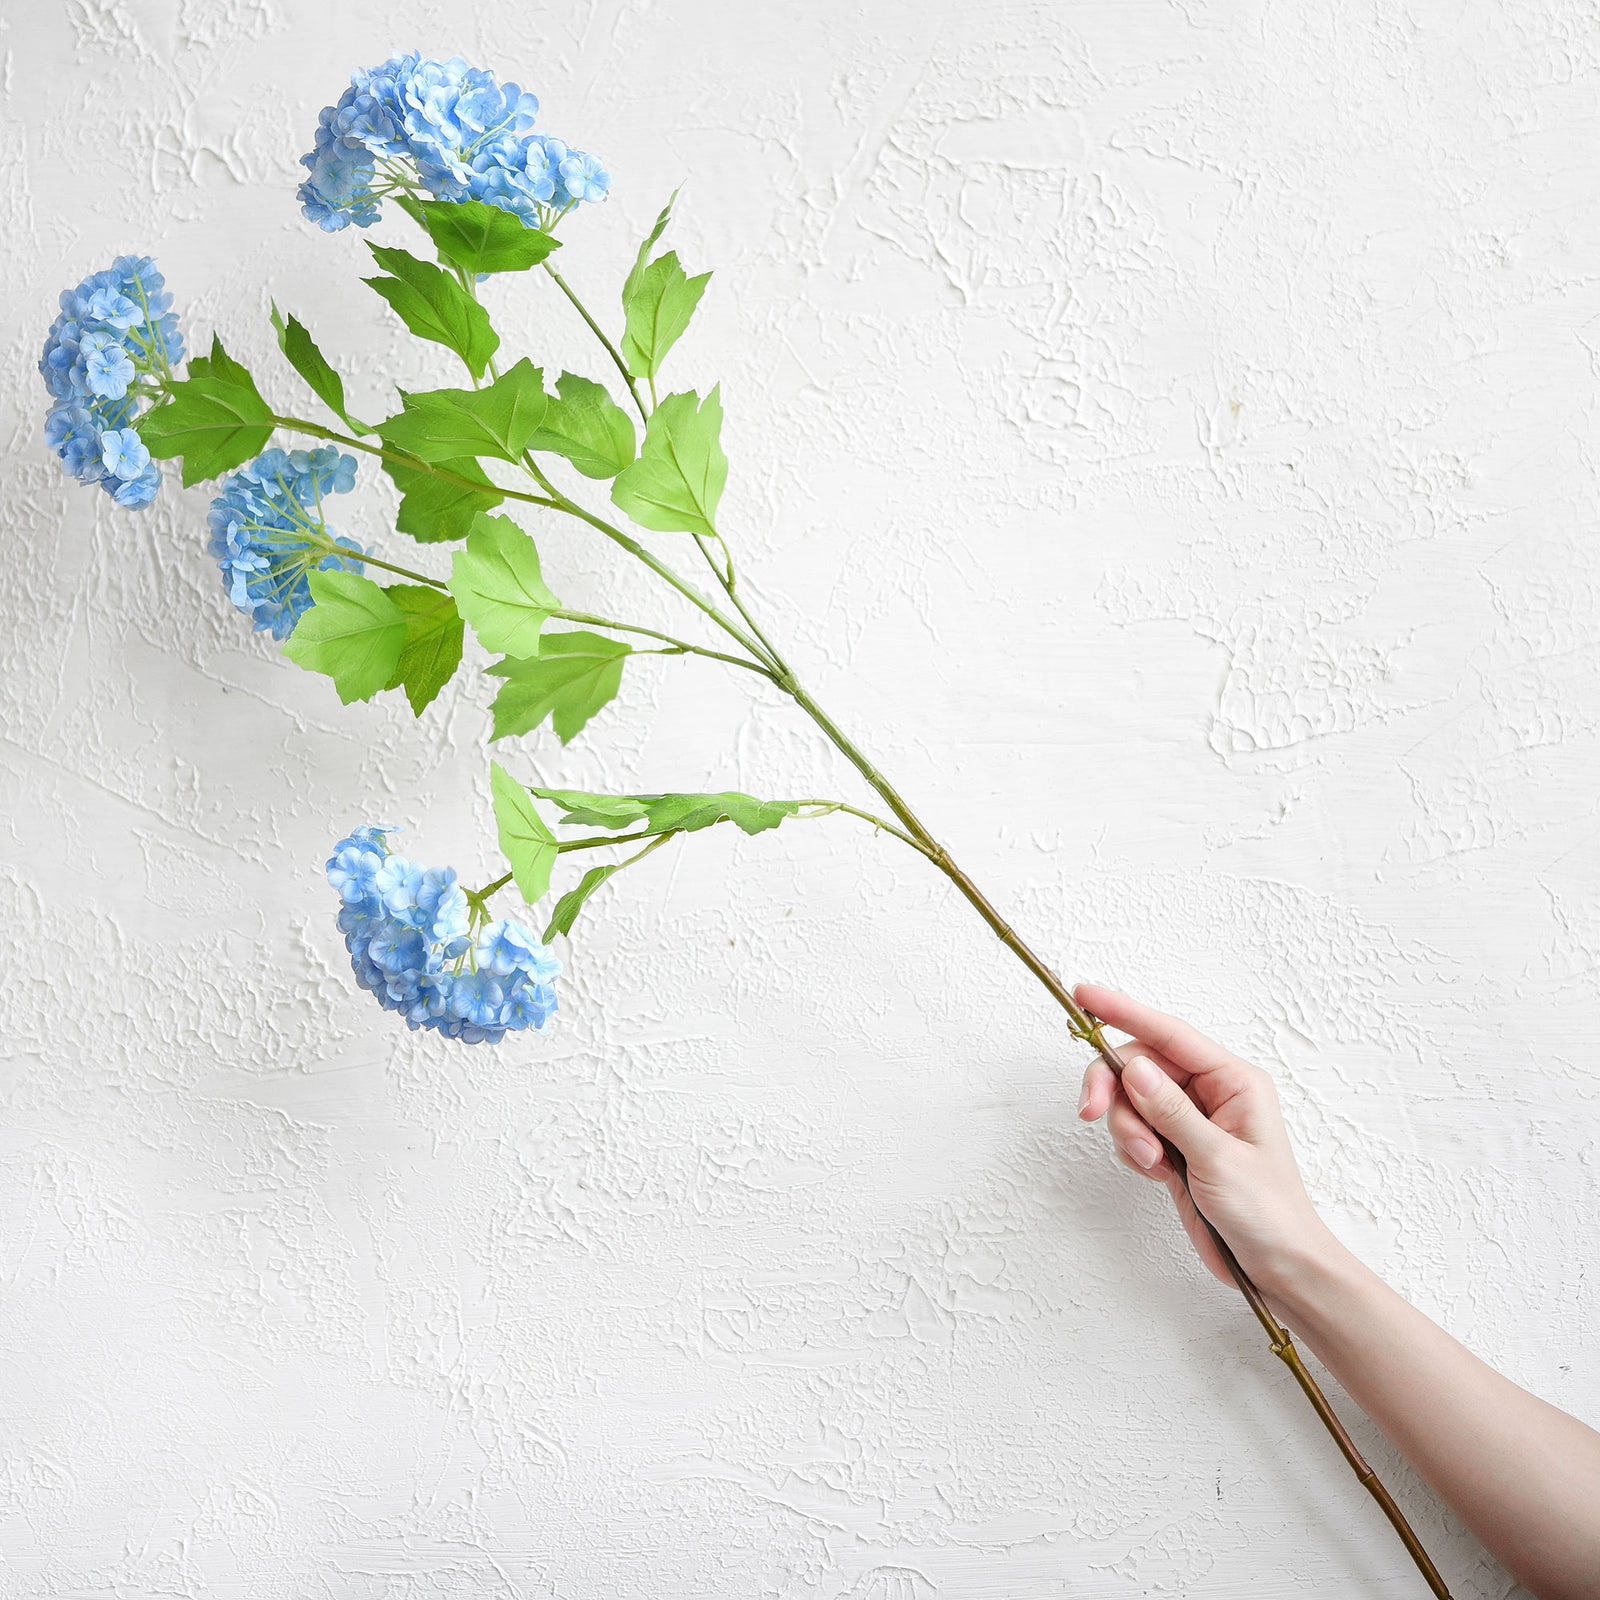 Carolina Blue Snowball Viburnum Long Stem Artificial Flowers 2 Stems